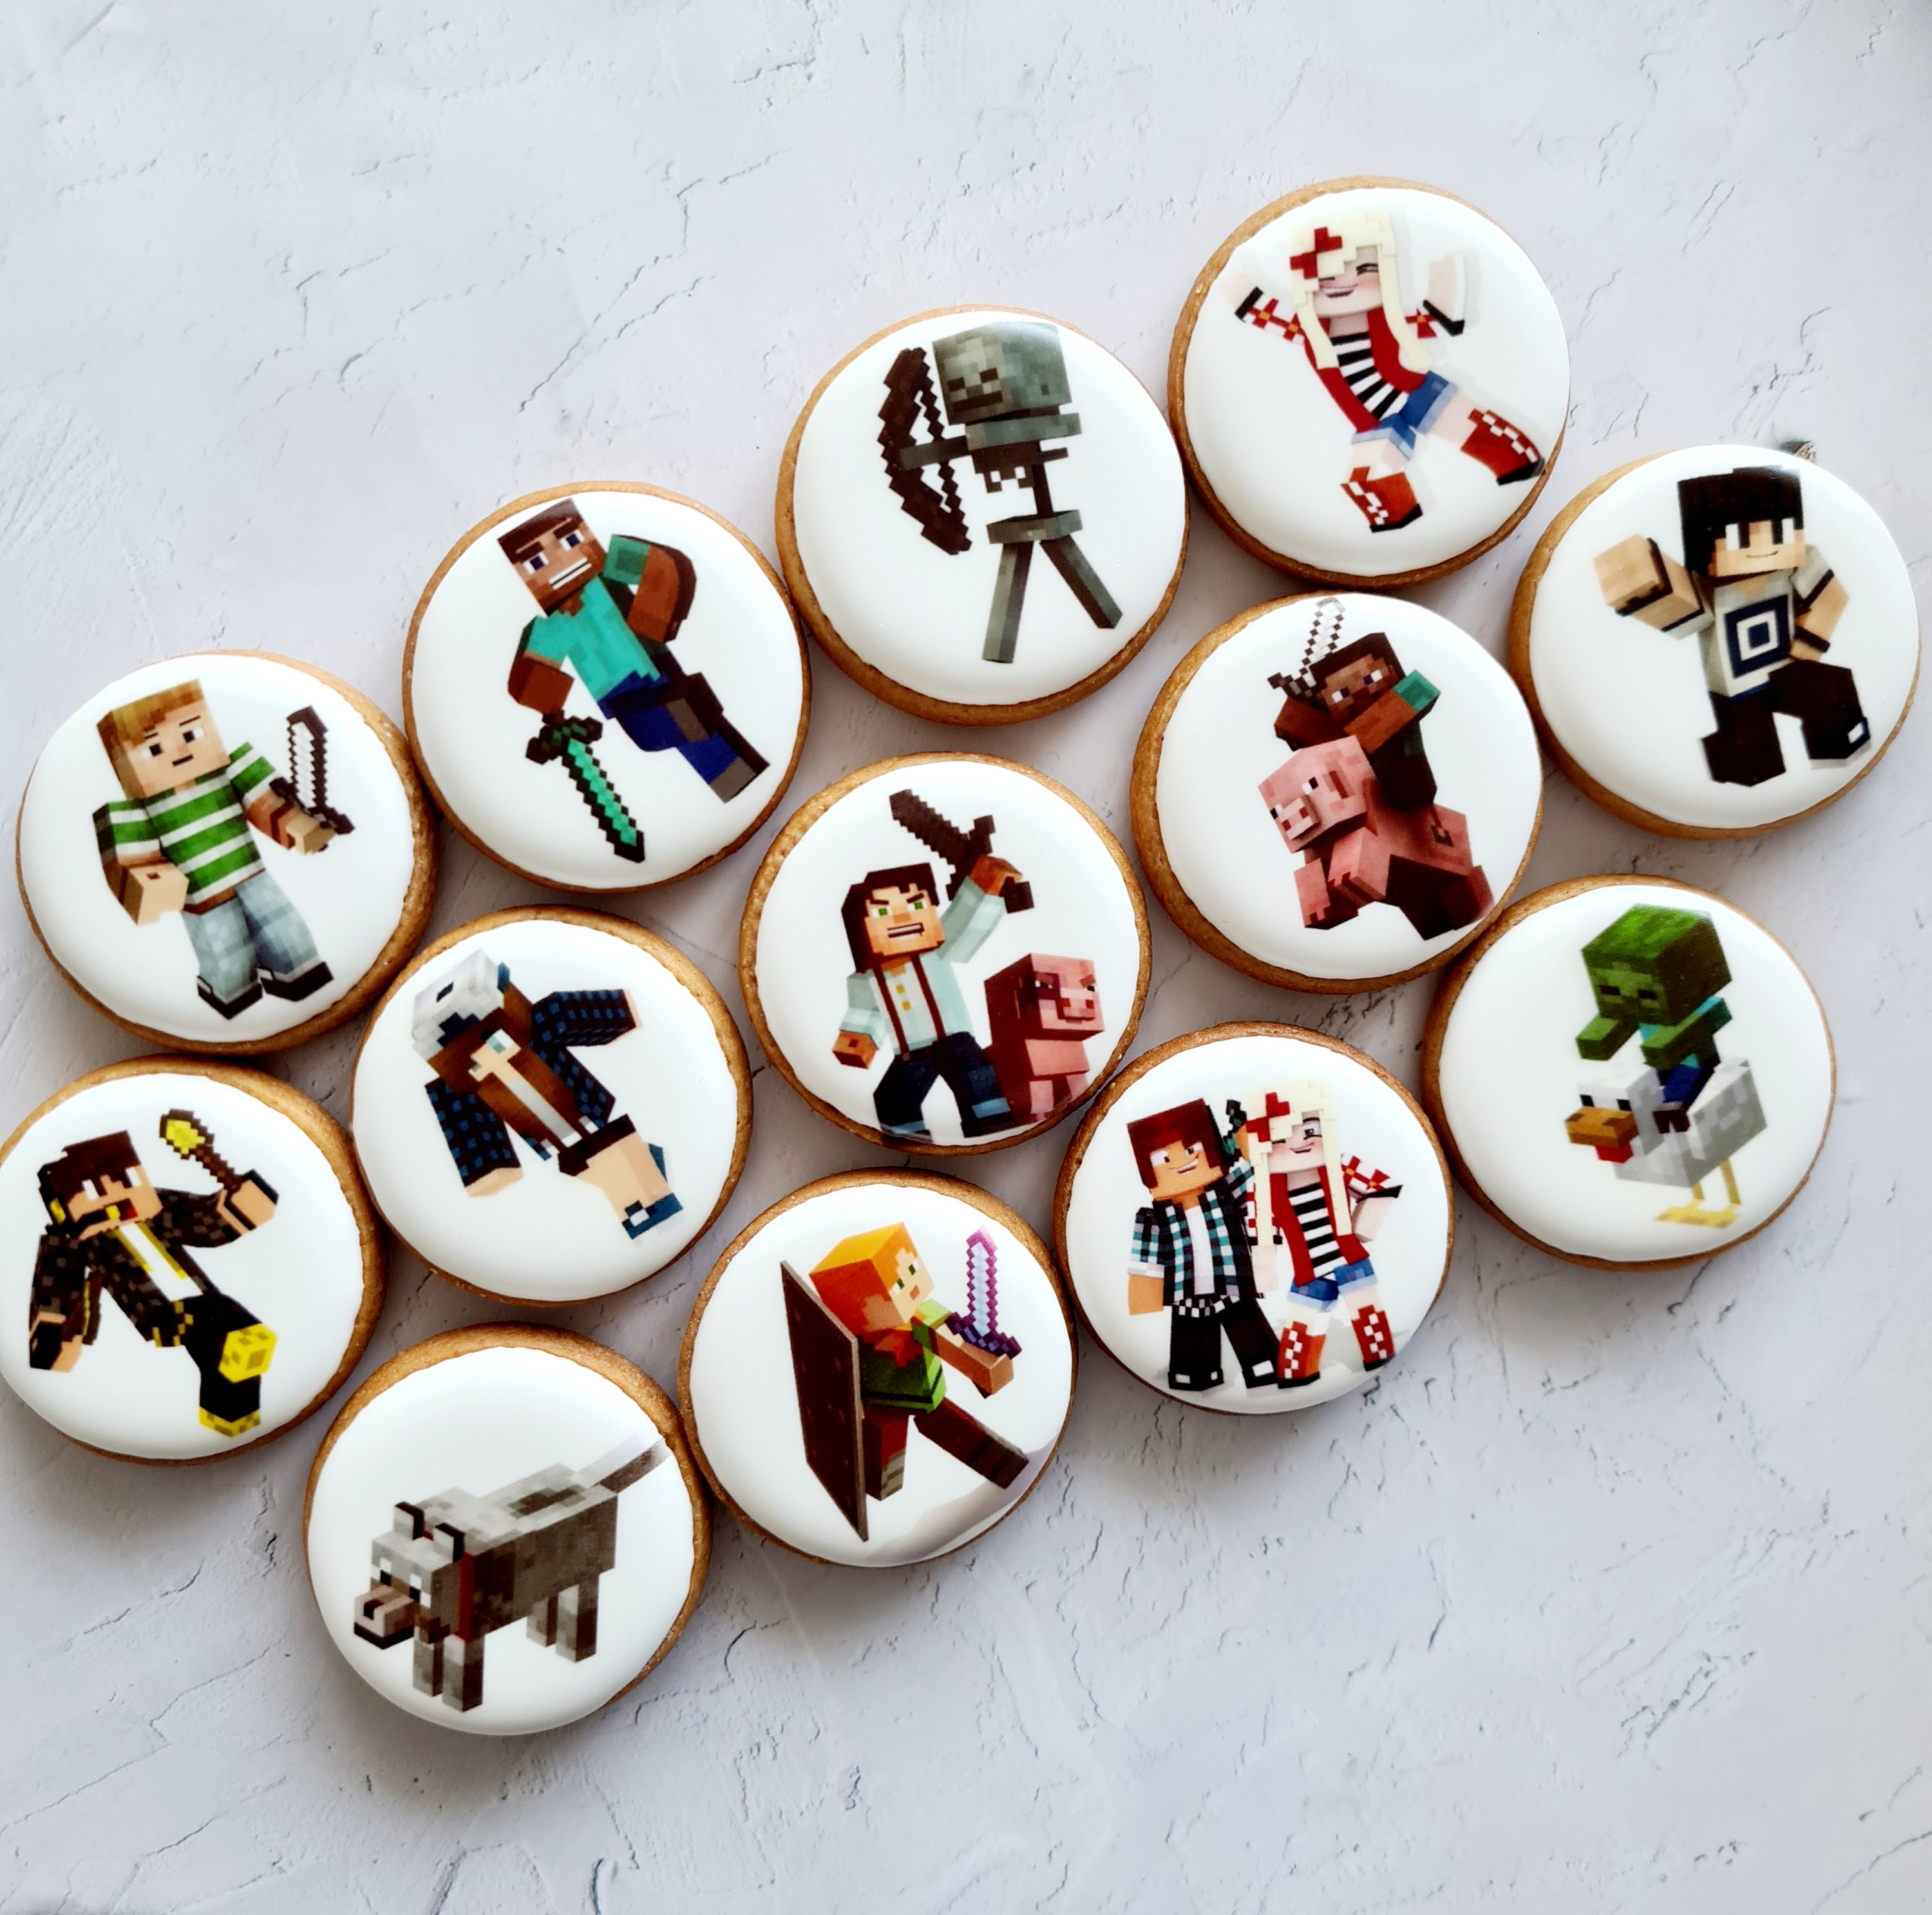 Dekoruoti imbieriniai sausainiai "Minecraft"